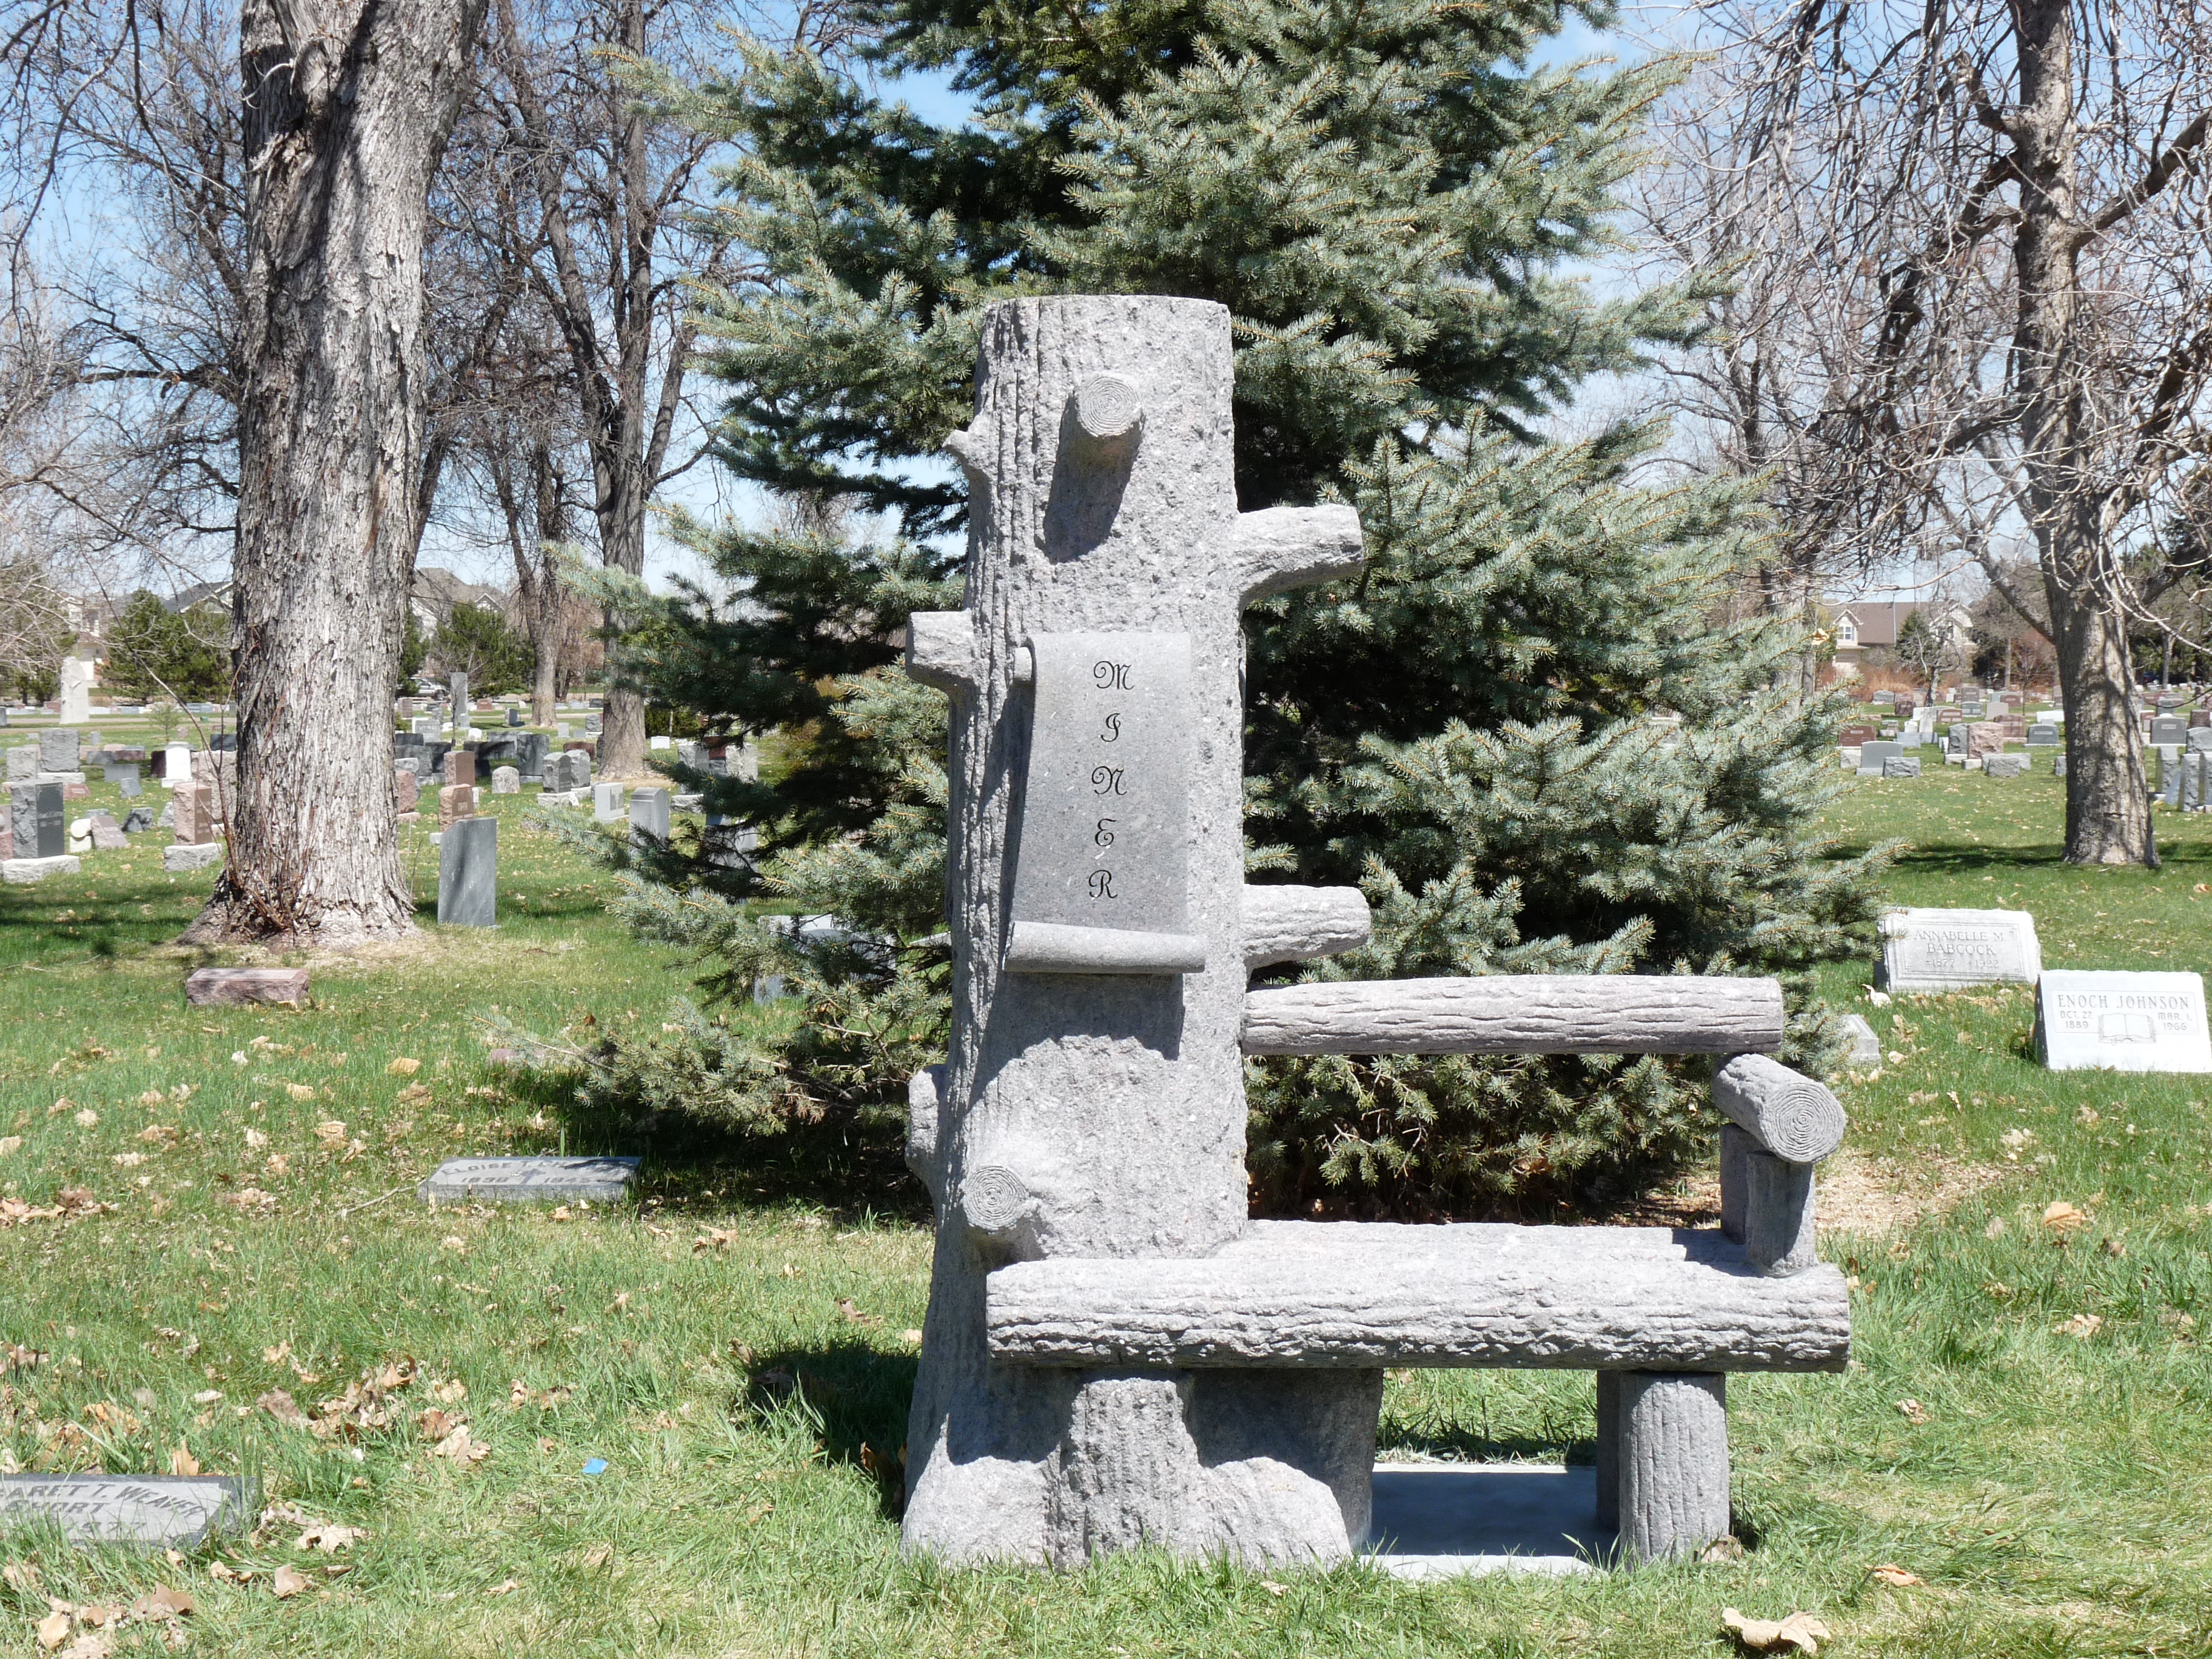 sculpture of memorial bench